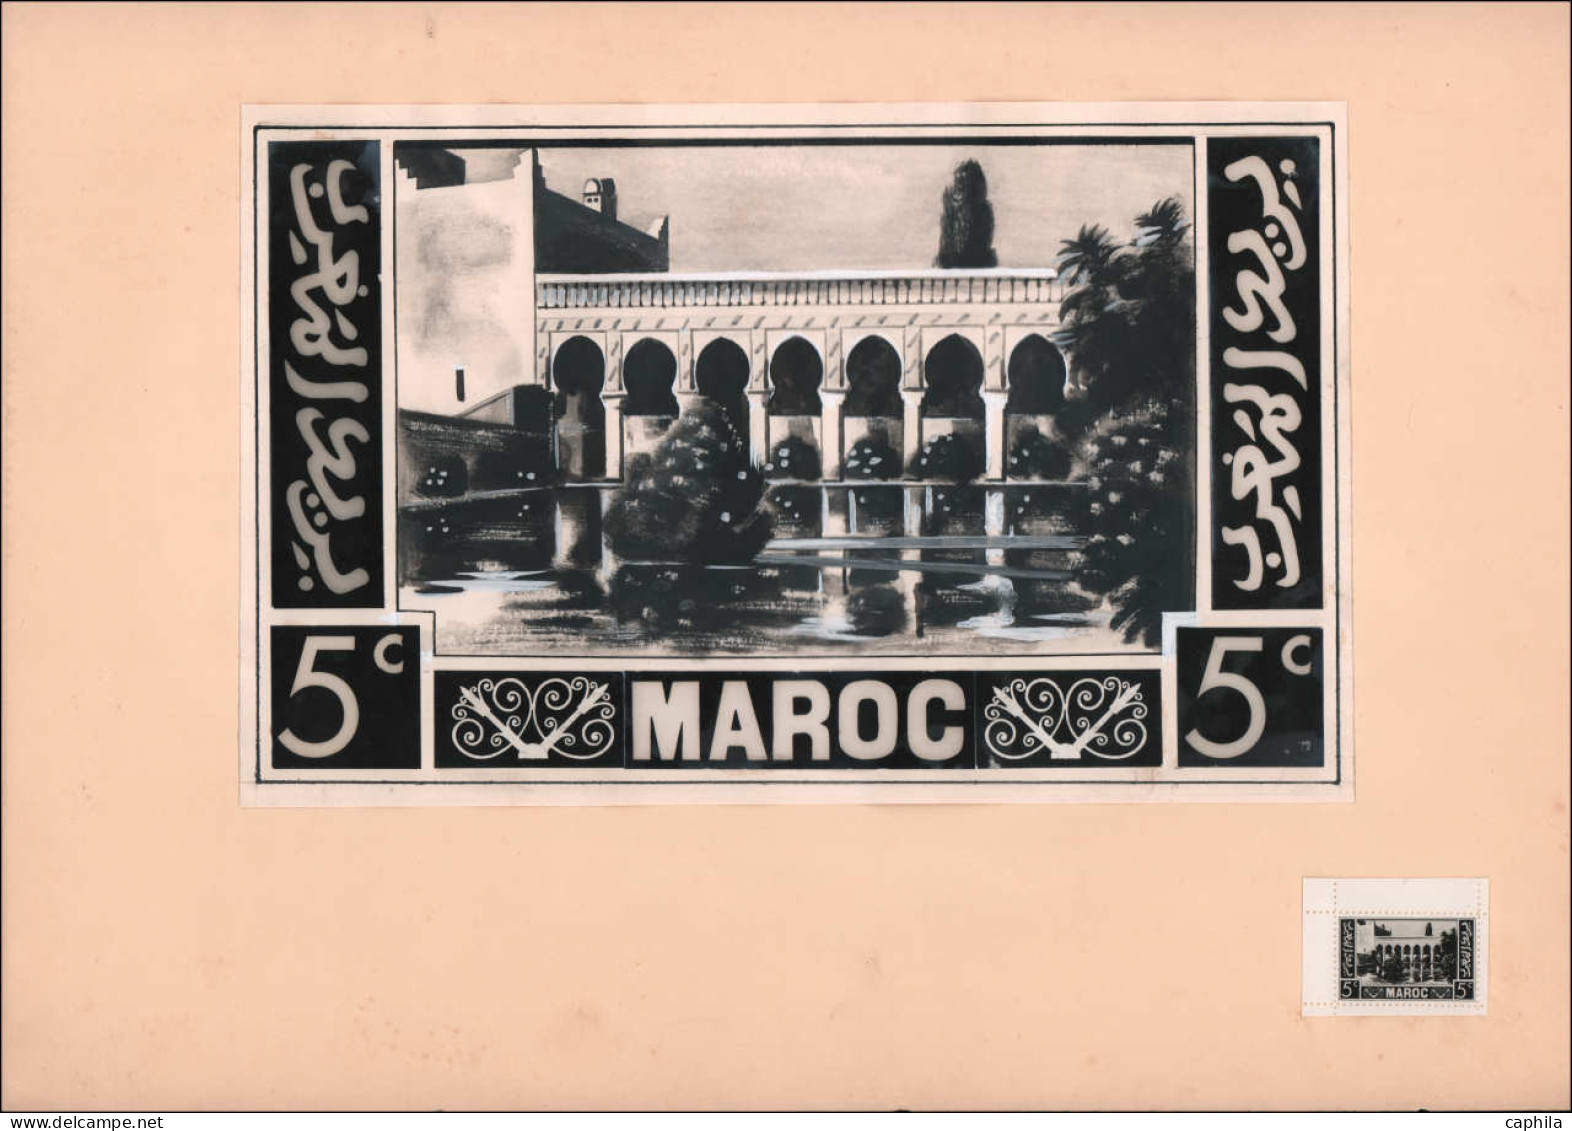 MAQ MAROC - Epreuves d'Artiste - (1933/1935), ensemble de 11 maquettes + réduction photo, grand format (300 x 195), encr